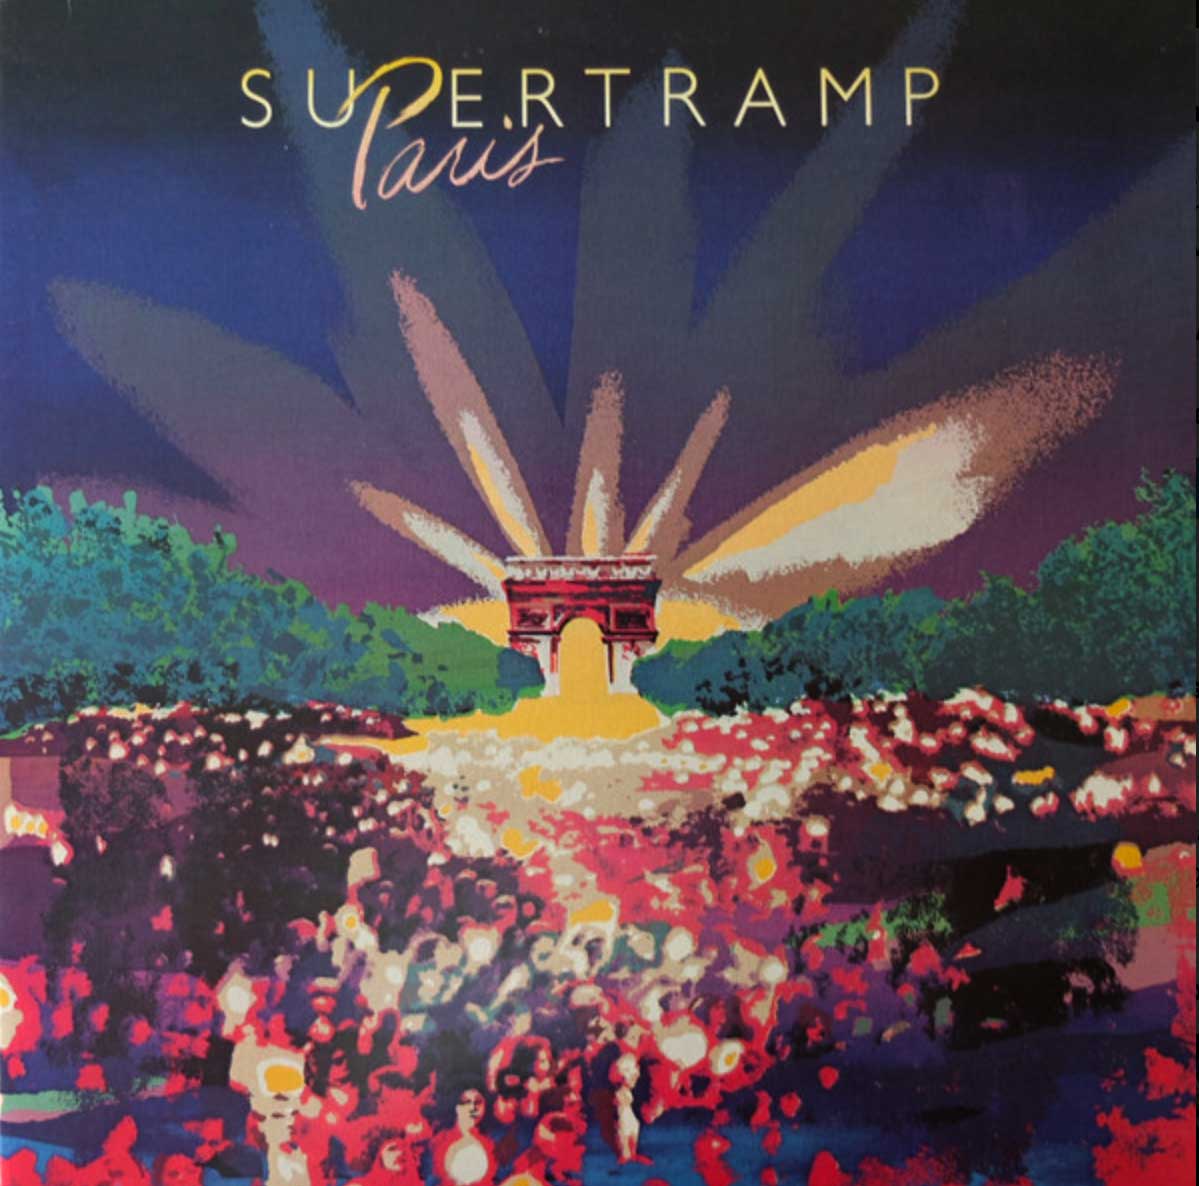 Supertramp - Paris - 1980 Pressing